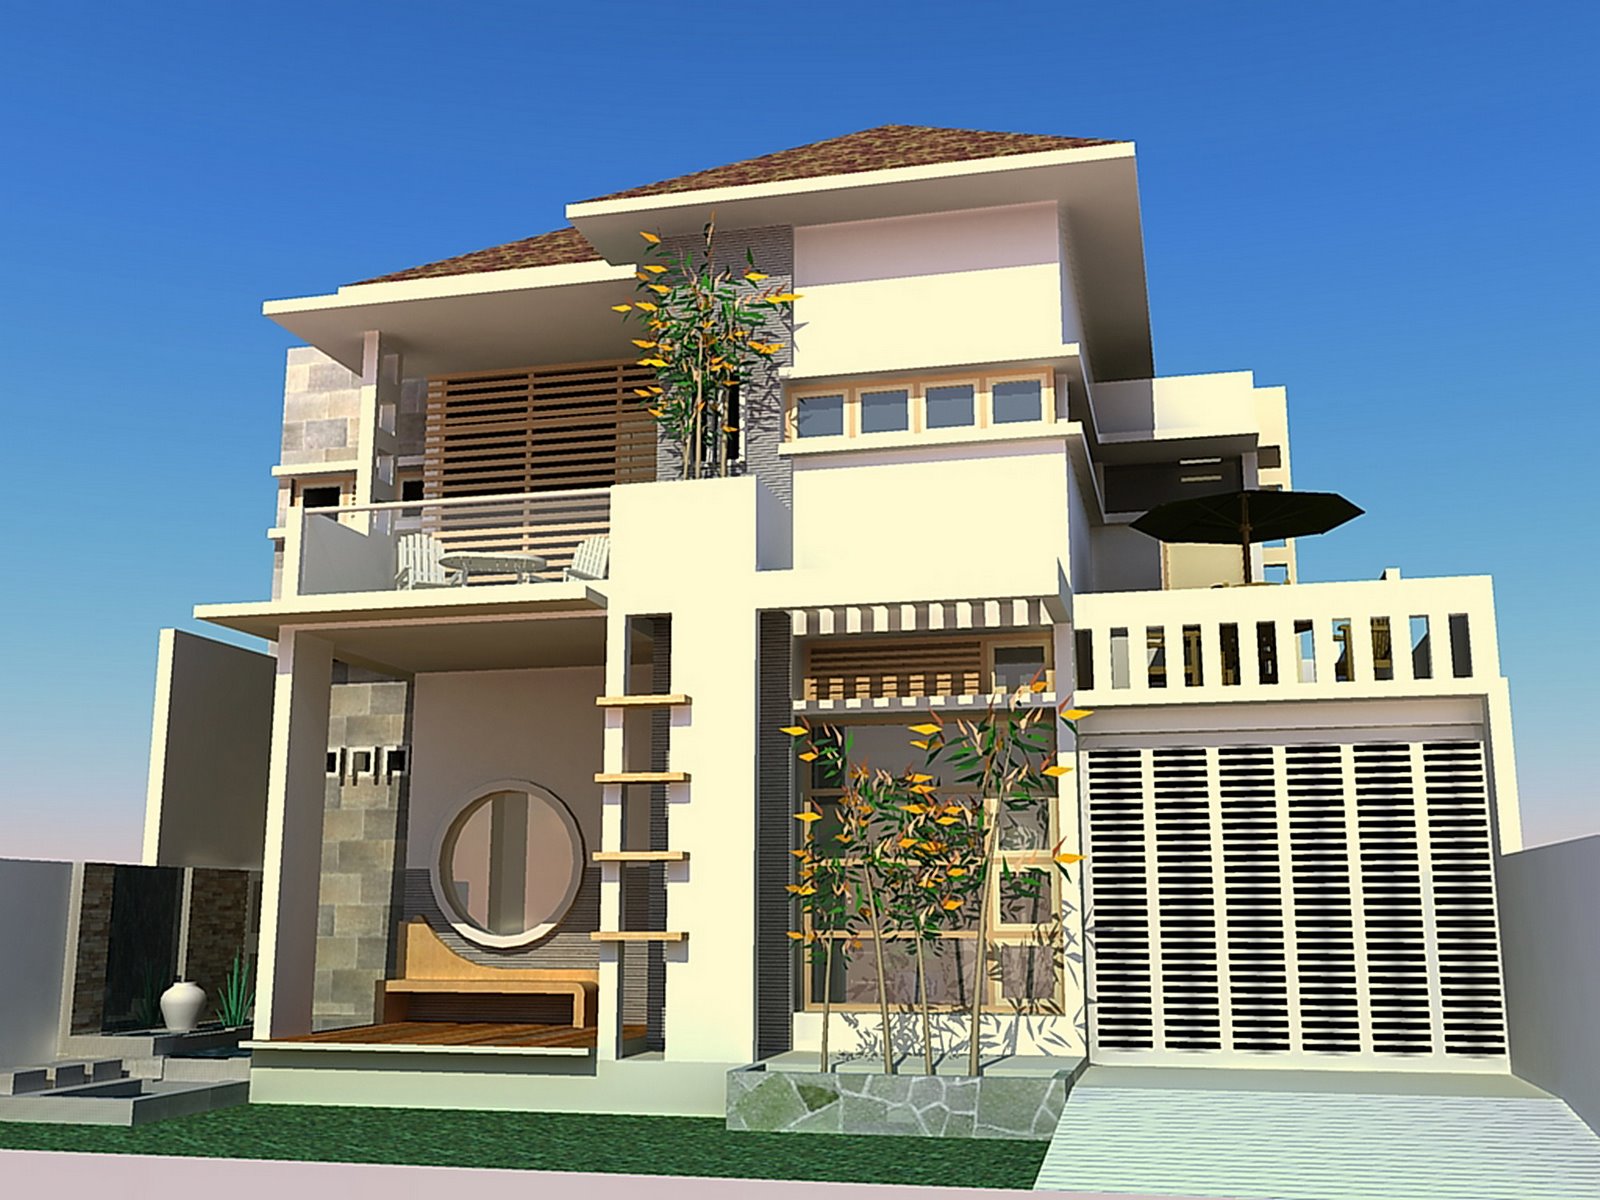 Desain Rumah Minimalis 2015 Type 36 72 - Rumah Minimalis 